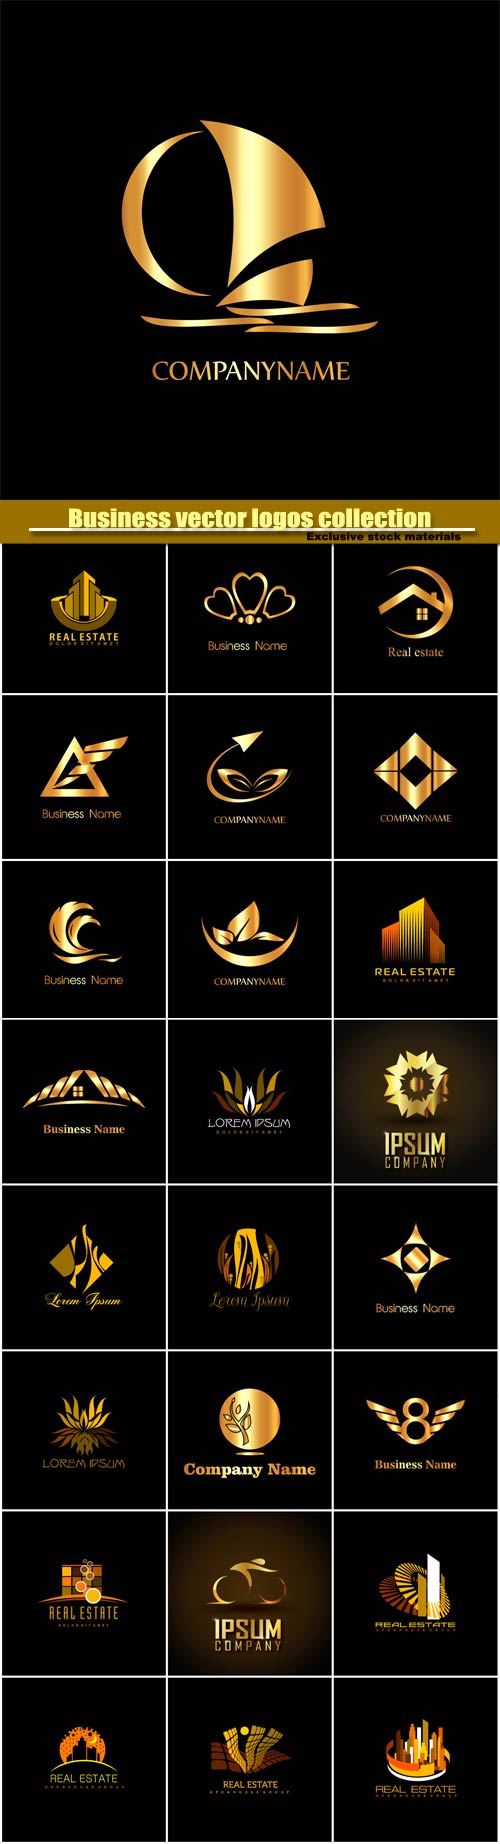 Business vector logos templates, creative gold figure icon